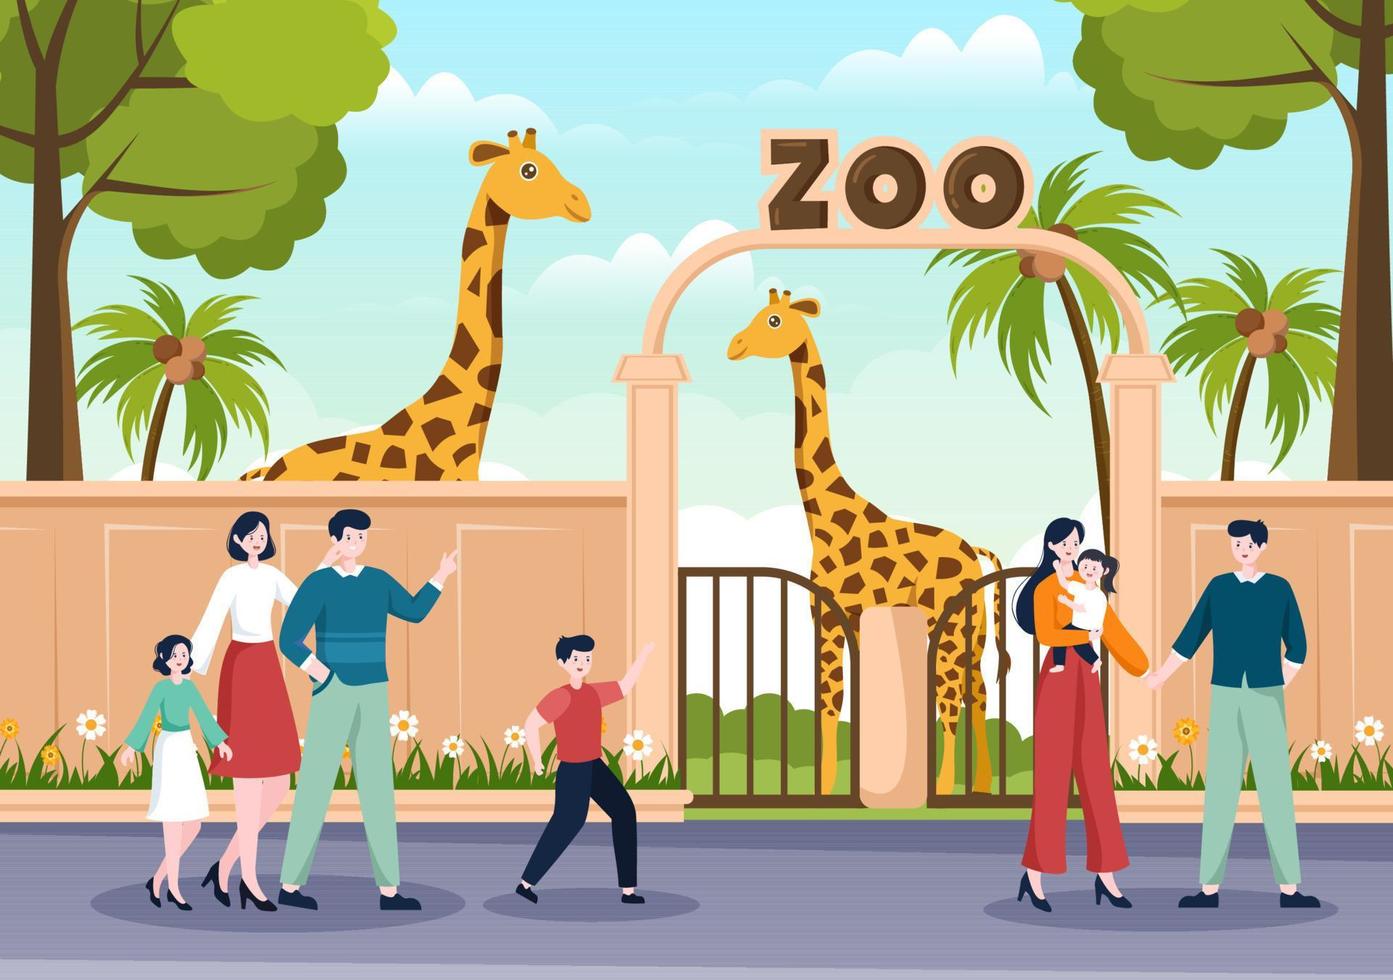 illustration de dessin animé de zoo avec des animaux de safari girafe, cage et visiteurs sur le territoire sur la conception de fond de forêt vecteur